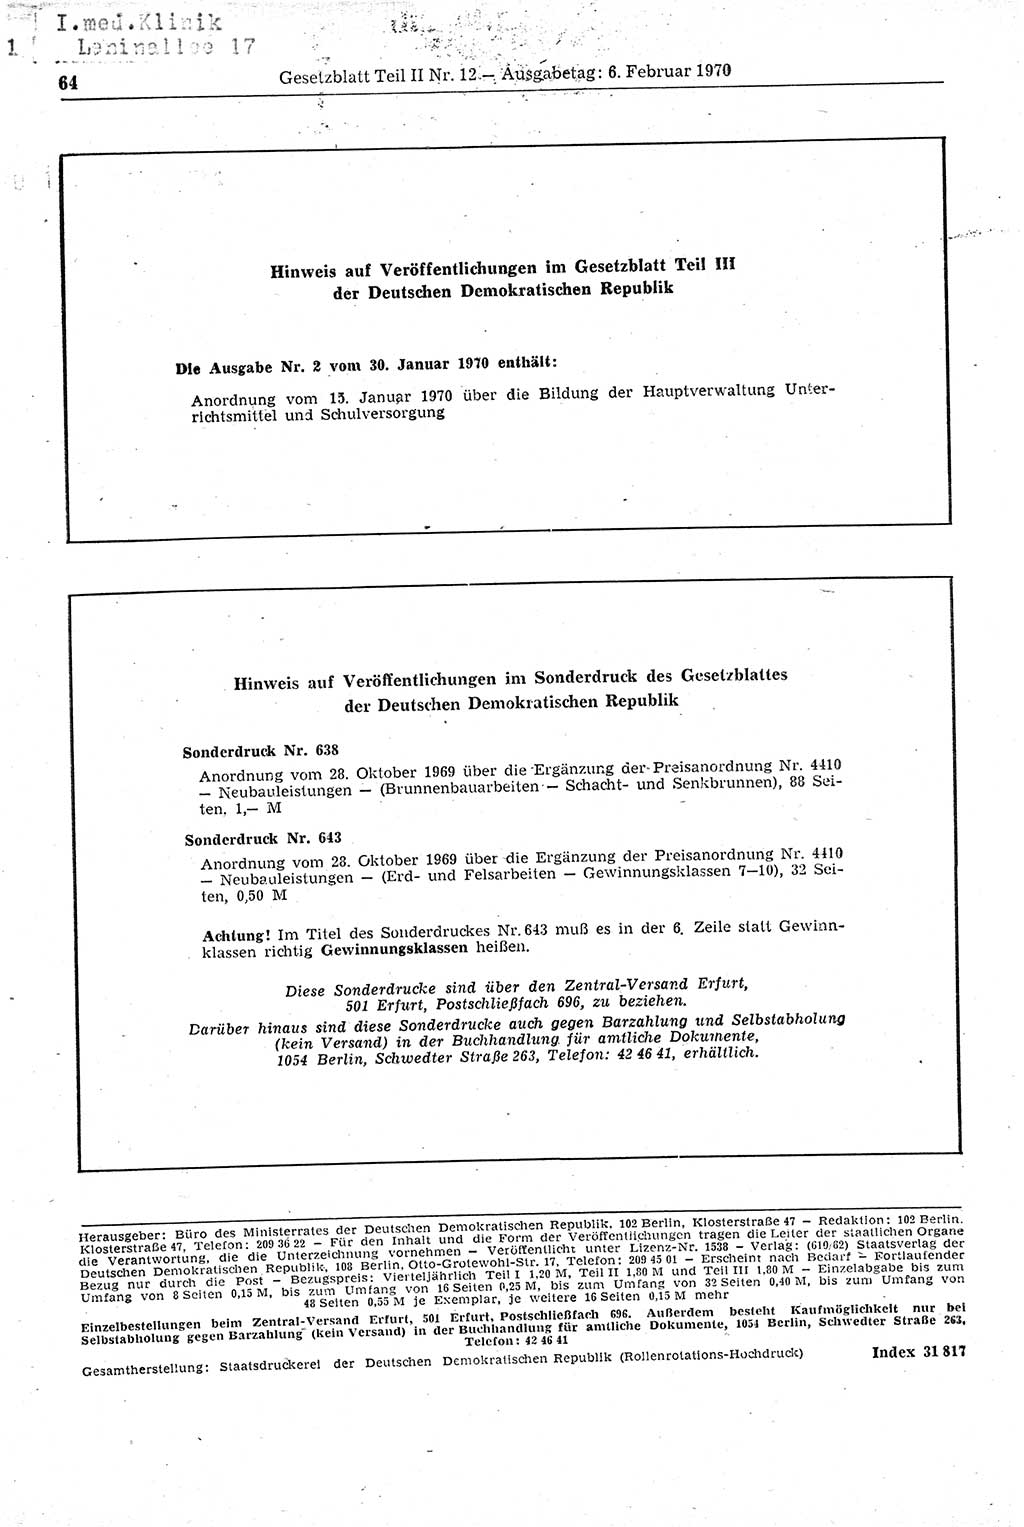 Gesetzblatt (GBl.) der Deutschen Demokratischen Republik (DDR) Teil ⅠⅠ 1970, Seite 64 (GBl. DDR ⅠⅠ 1970, S. 64)